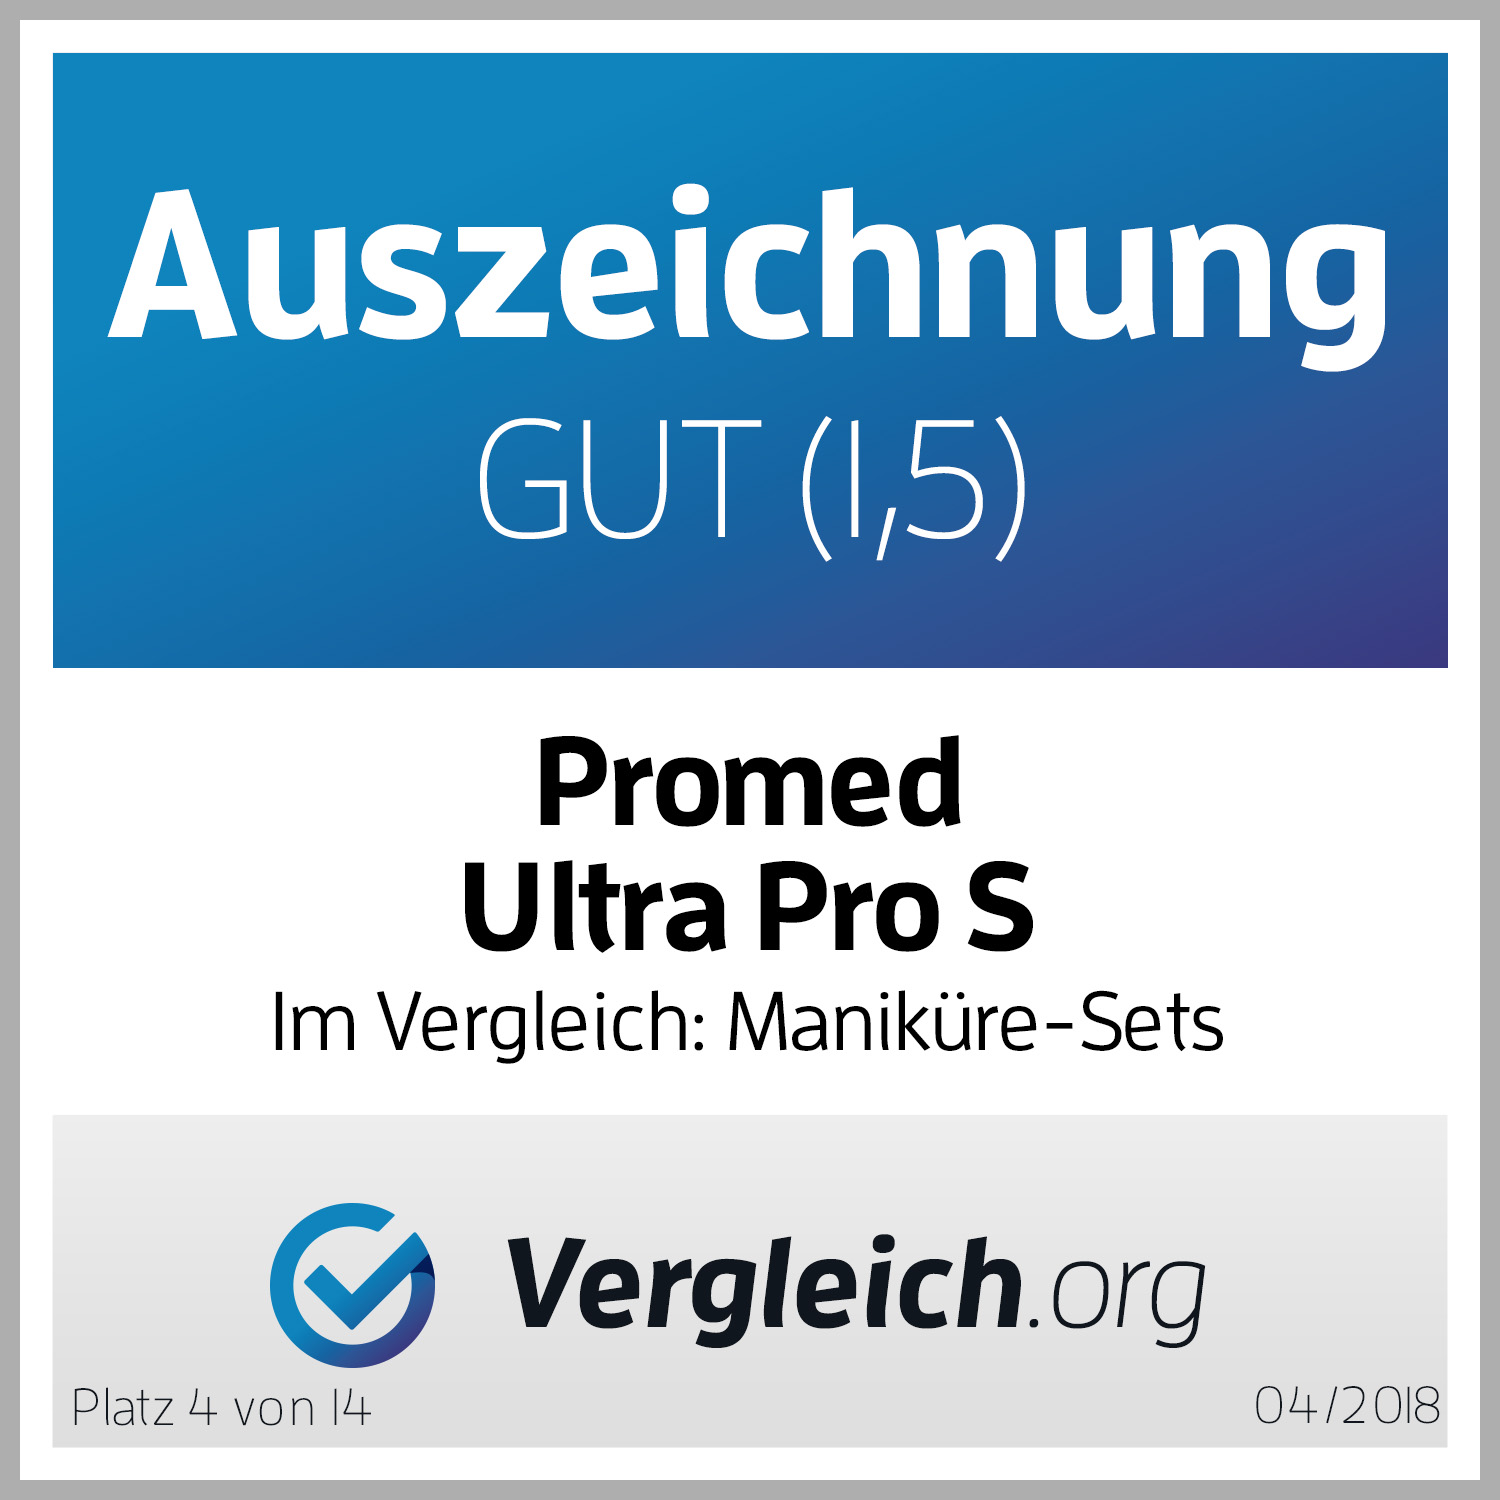 Auszeichnung_Promed-Ultra-Pro-S